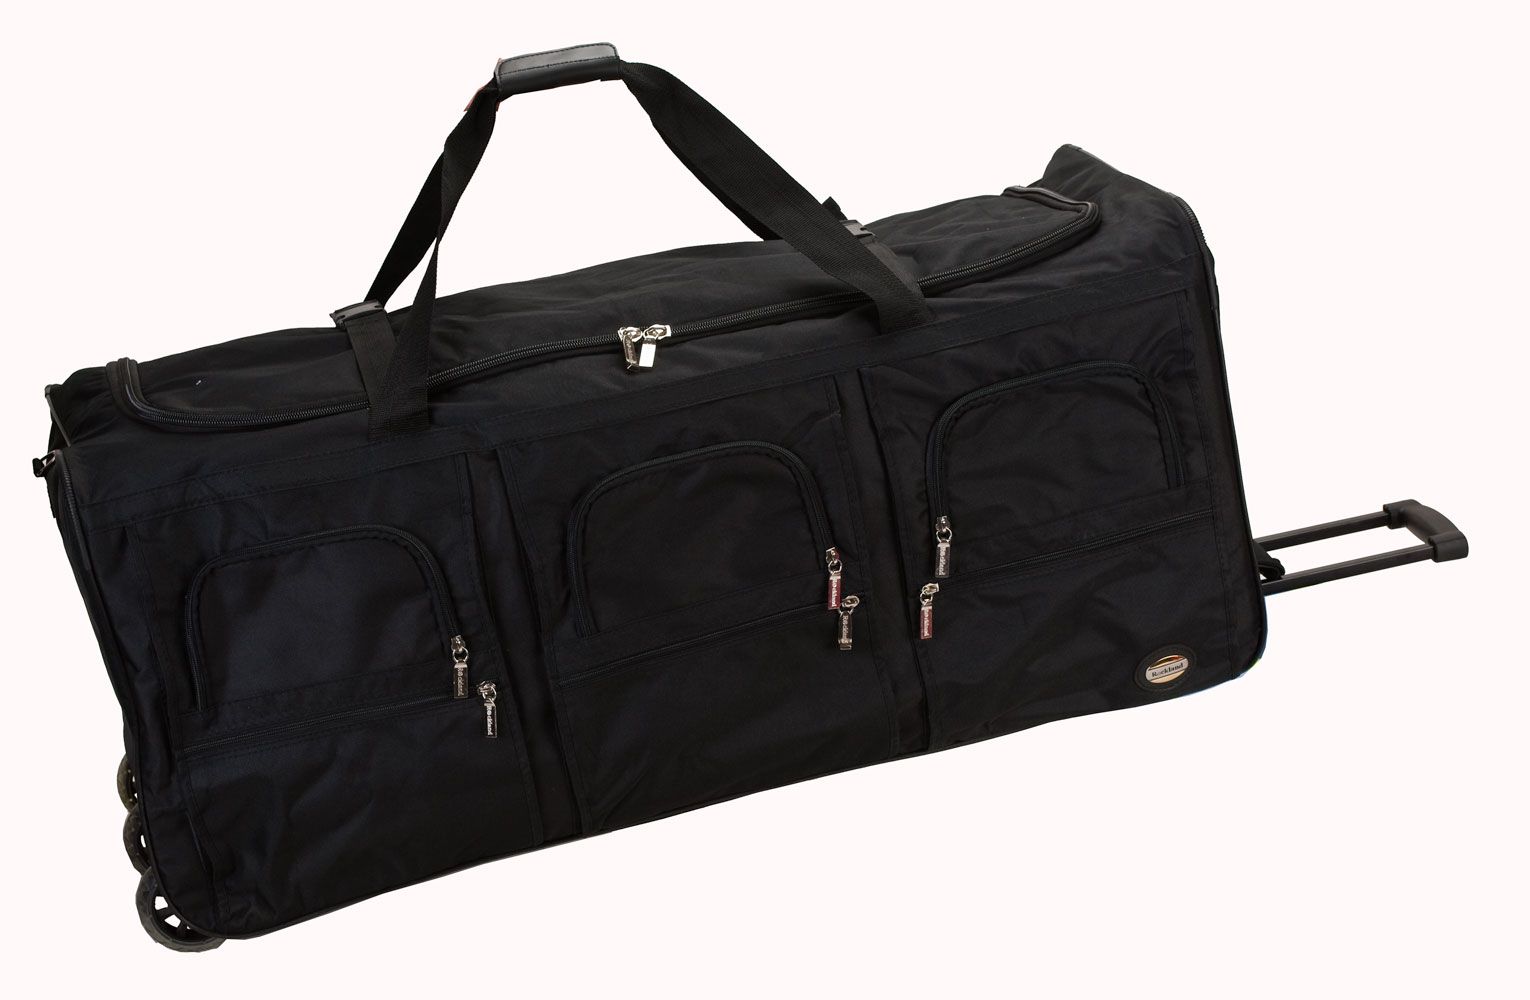 Rockland Fox Luggage 40" Rolling Duffle